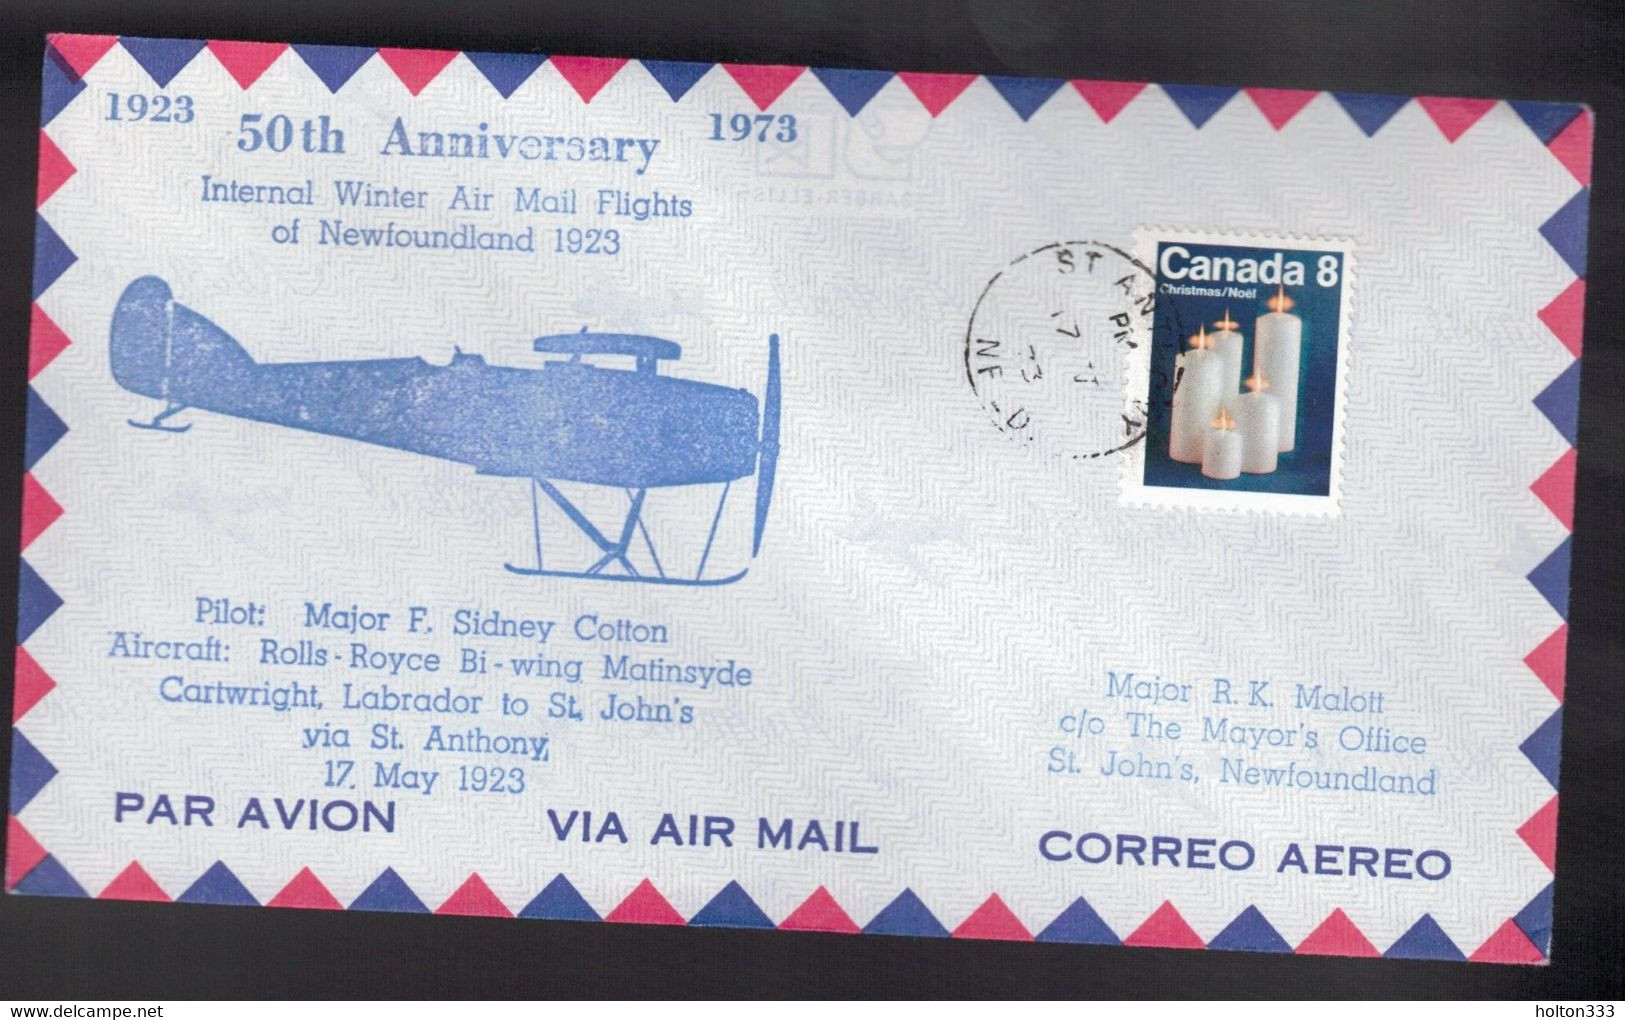 CANADA 50th Anniversary - NL Flight Cartwright-St Anthony-St John's May 17, 1923 2 - Commemorativi